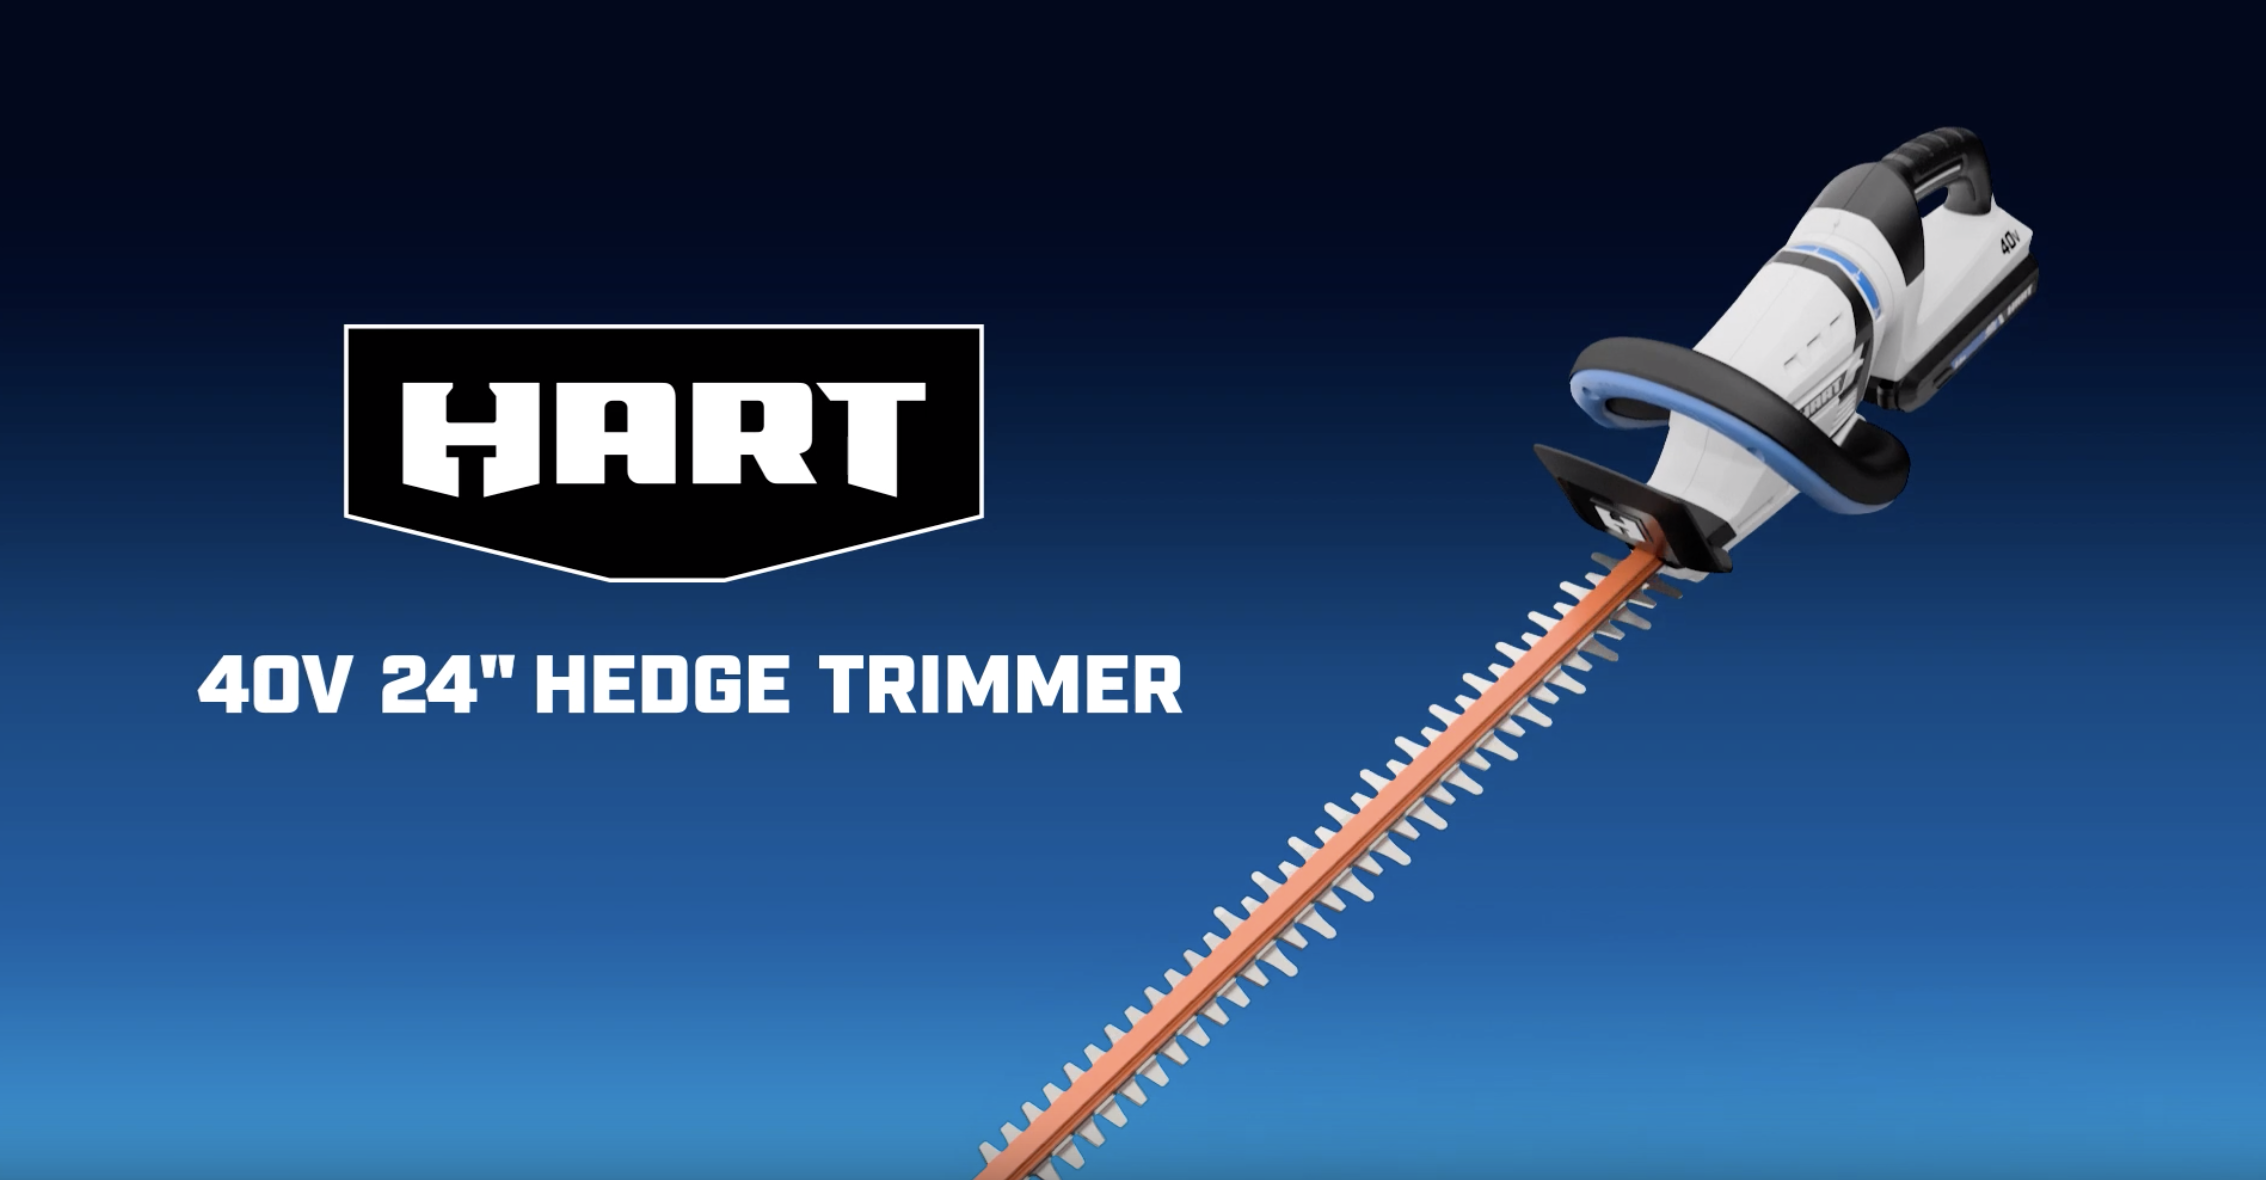 40V 24" Hedge Trimmer Kitbanner image